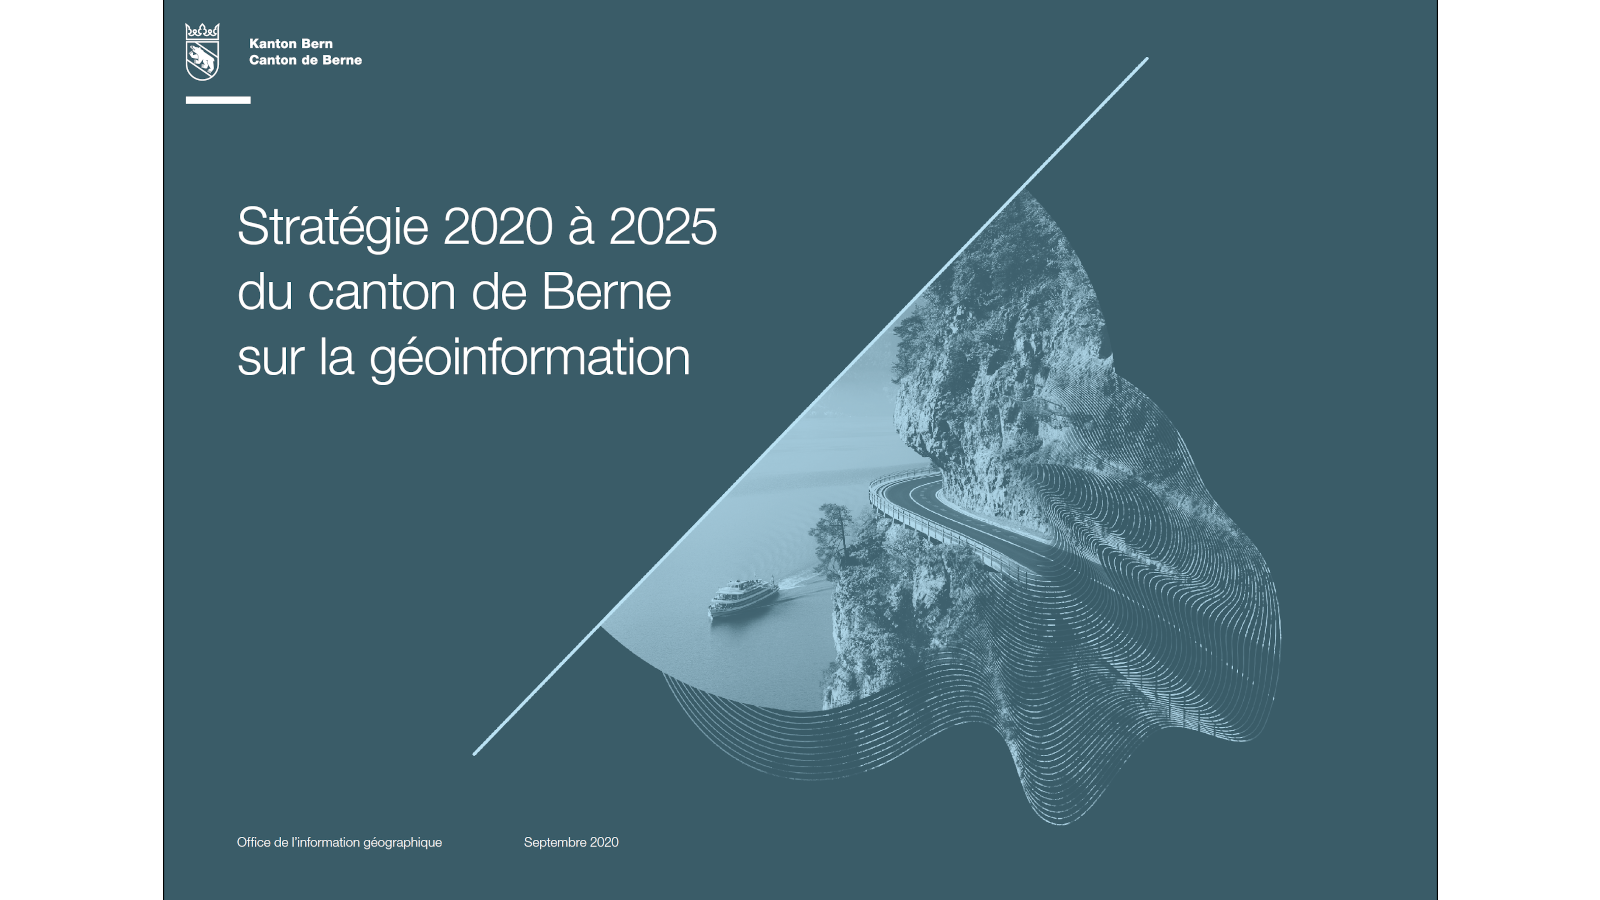 Stratégie 2020 à 2025 sur la géoinformation